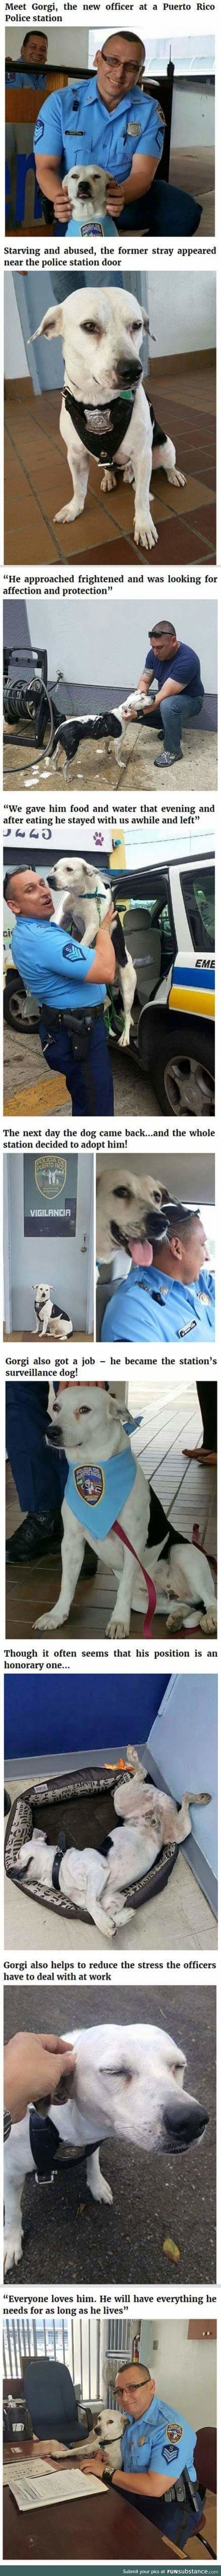 Gorgi the new doggo police officer